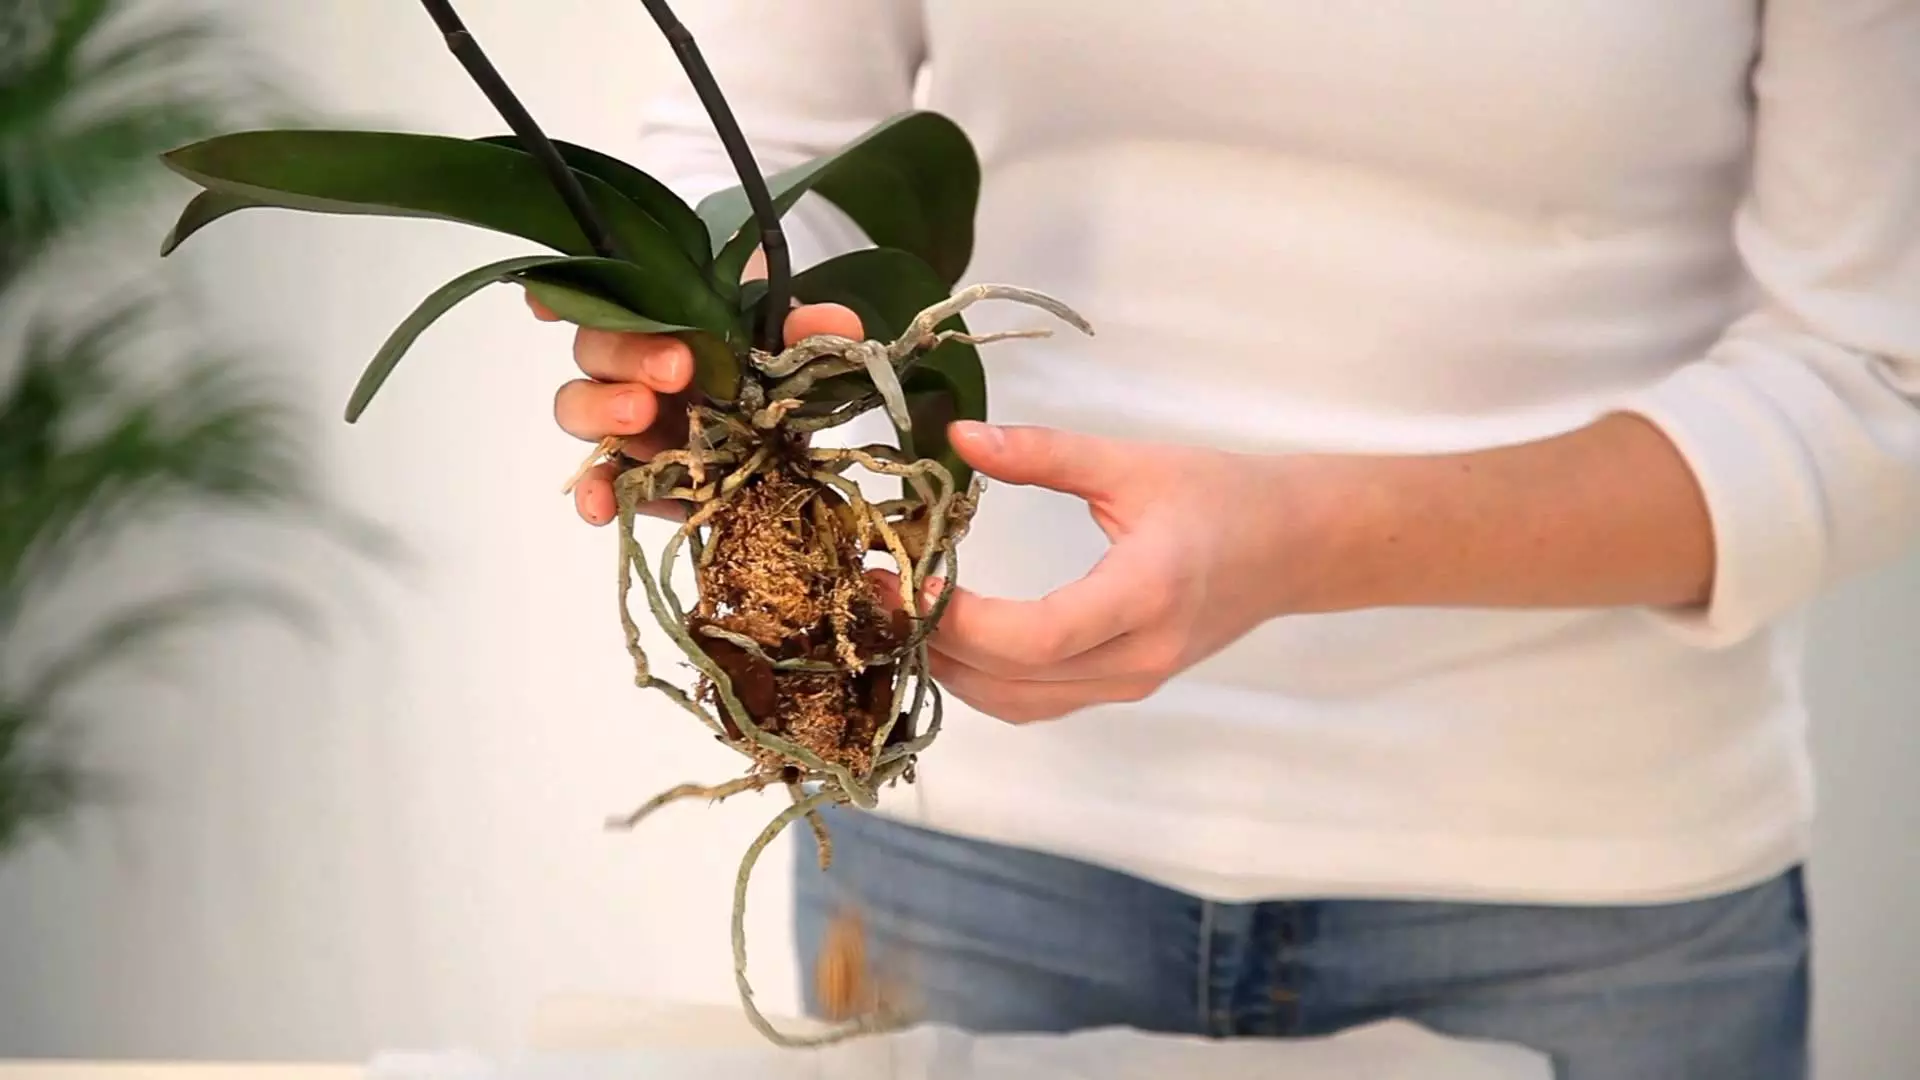 Blomster i huset: Hvordan lagre en presentert orkide?